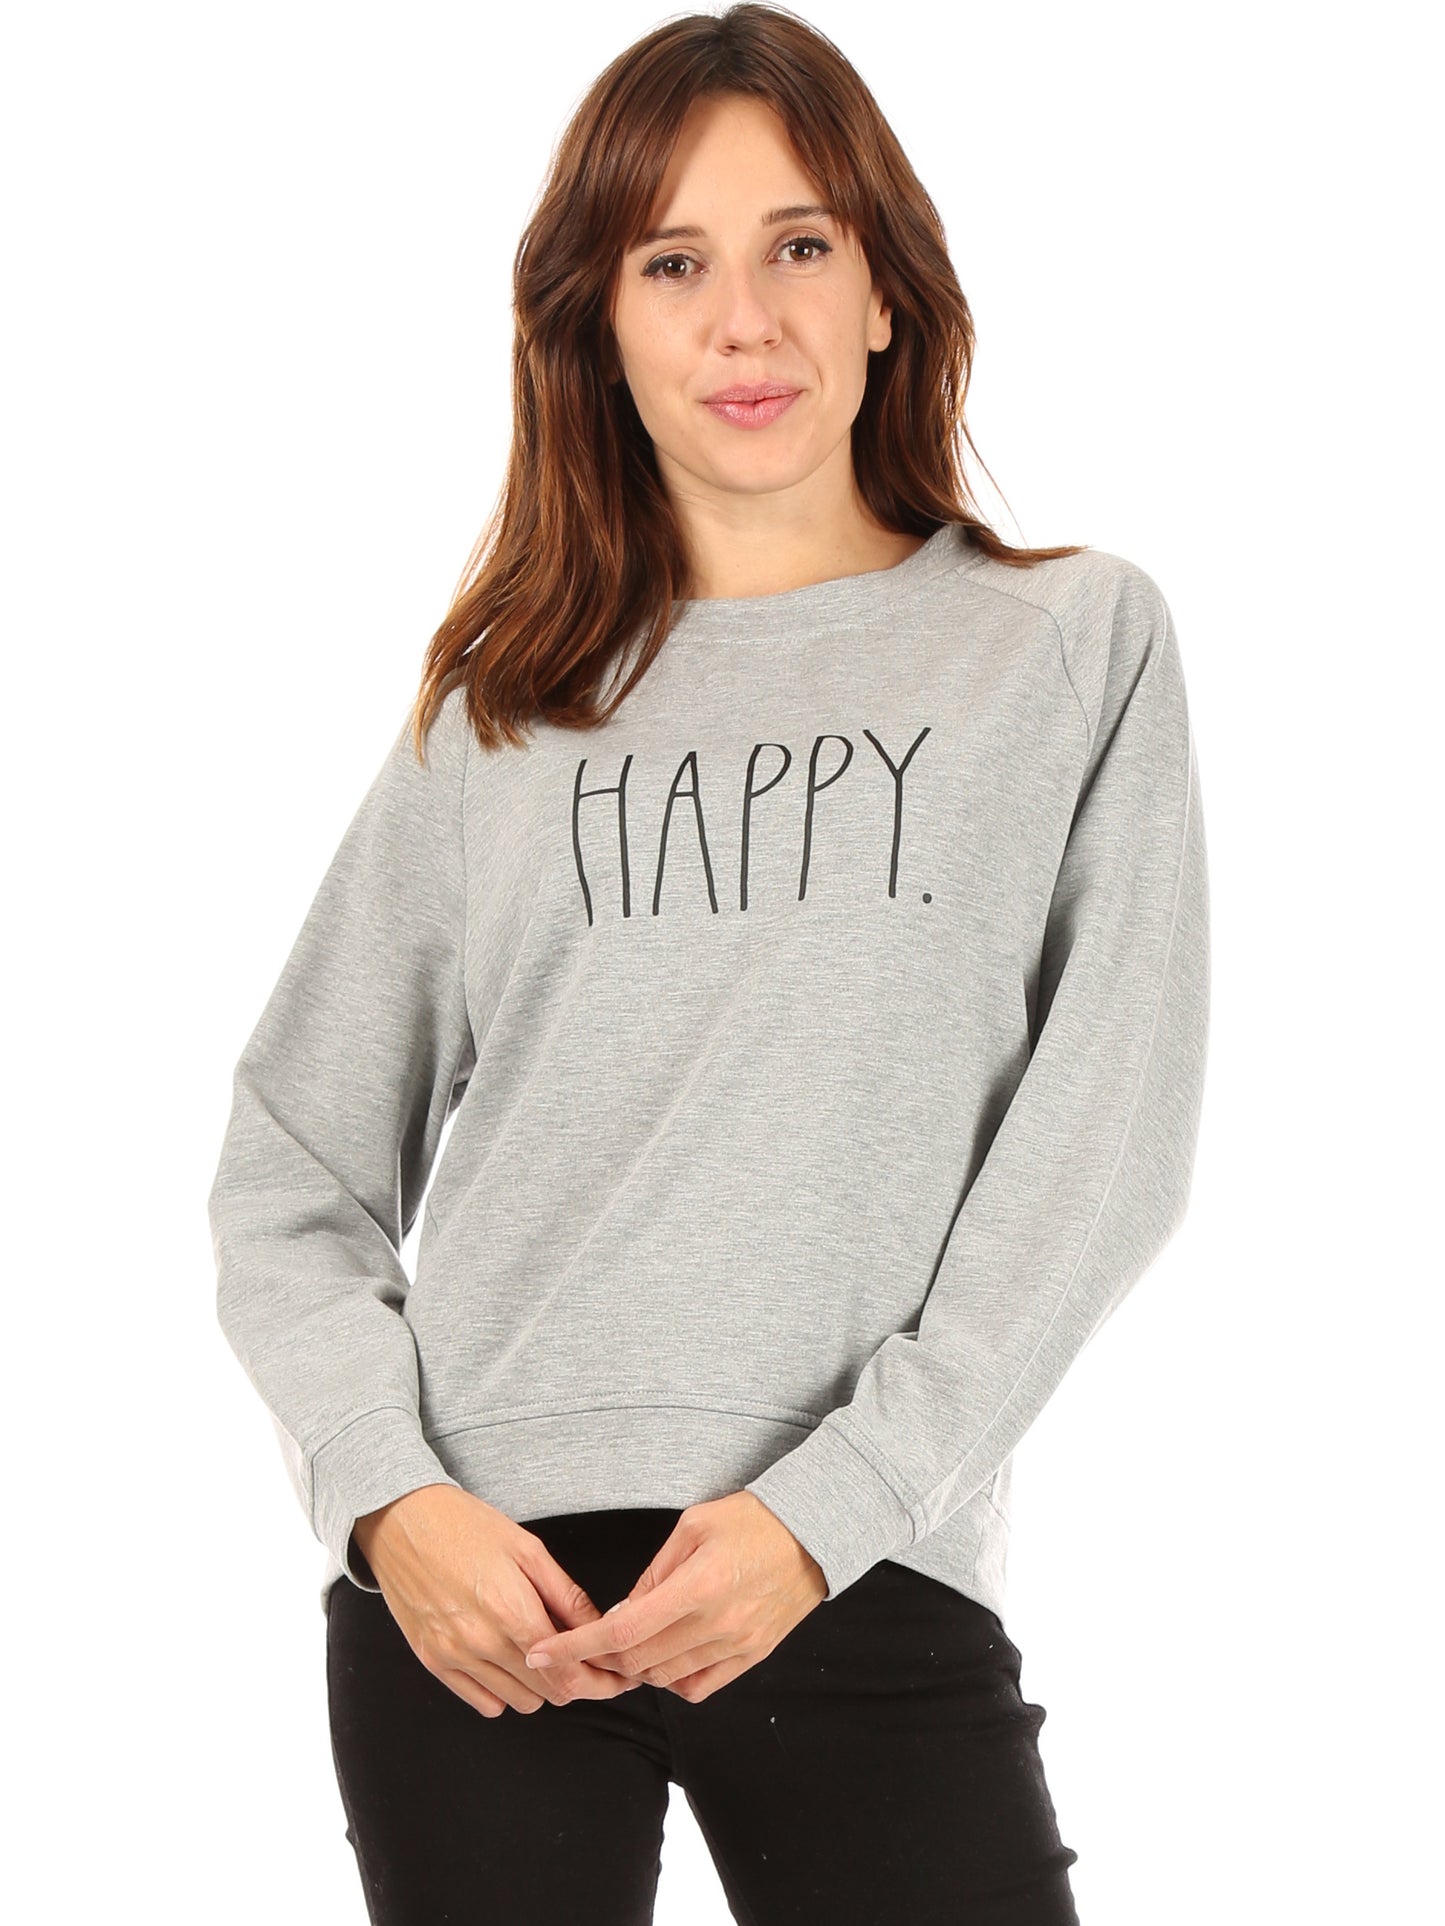 Women's "HAPPY" Studio Raglan Sweatshirt - Rae Dunn Wear - W Sweatshirt